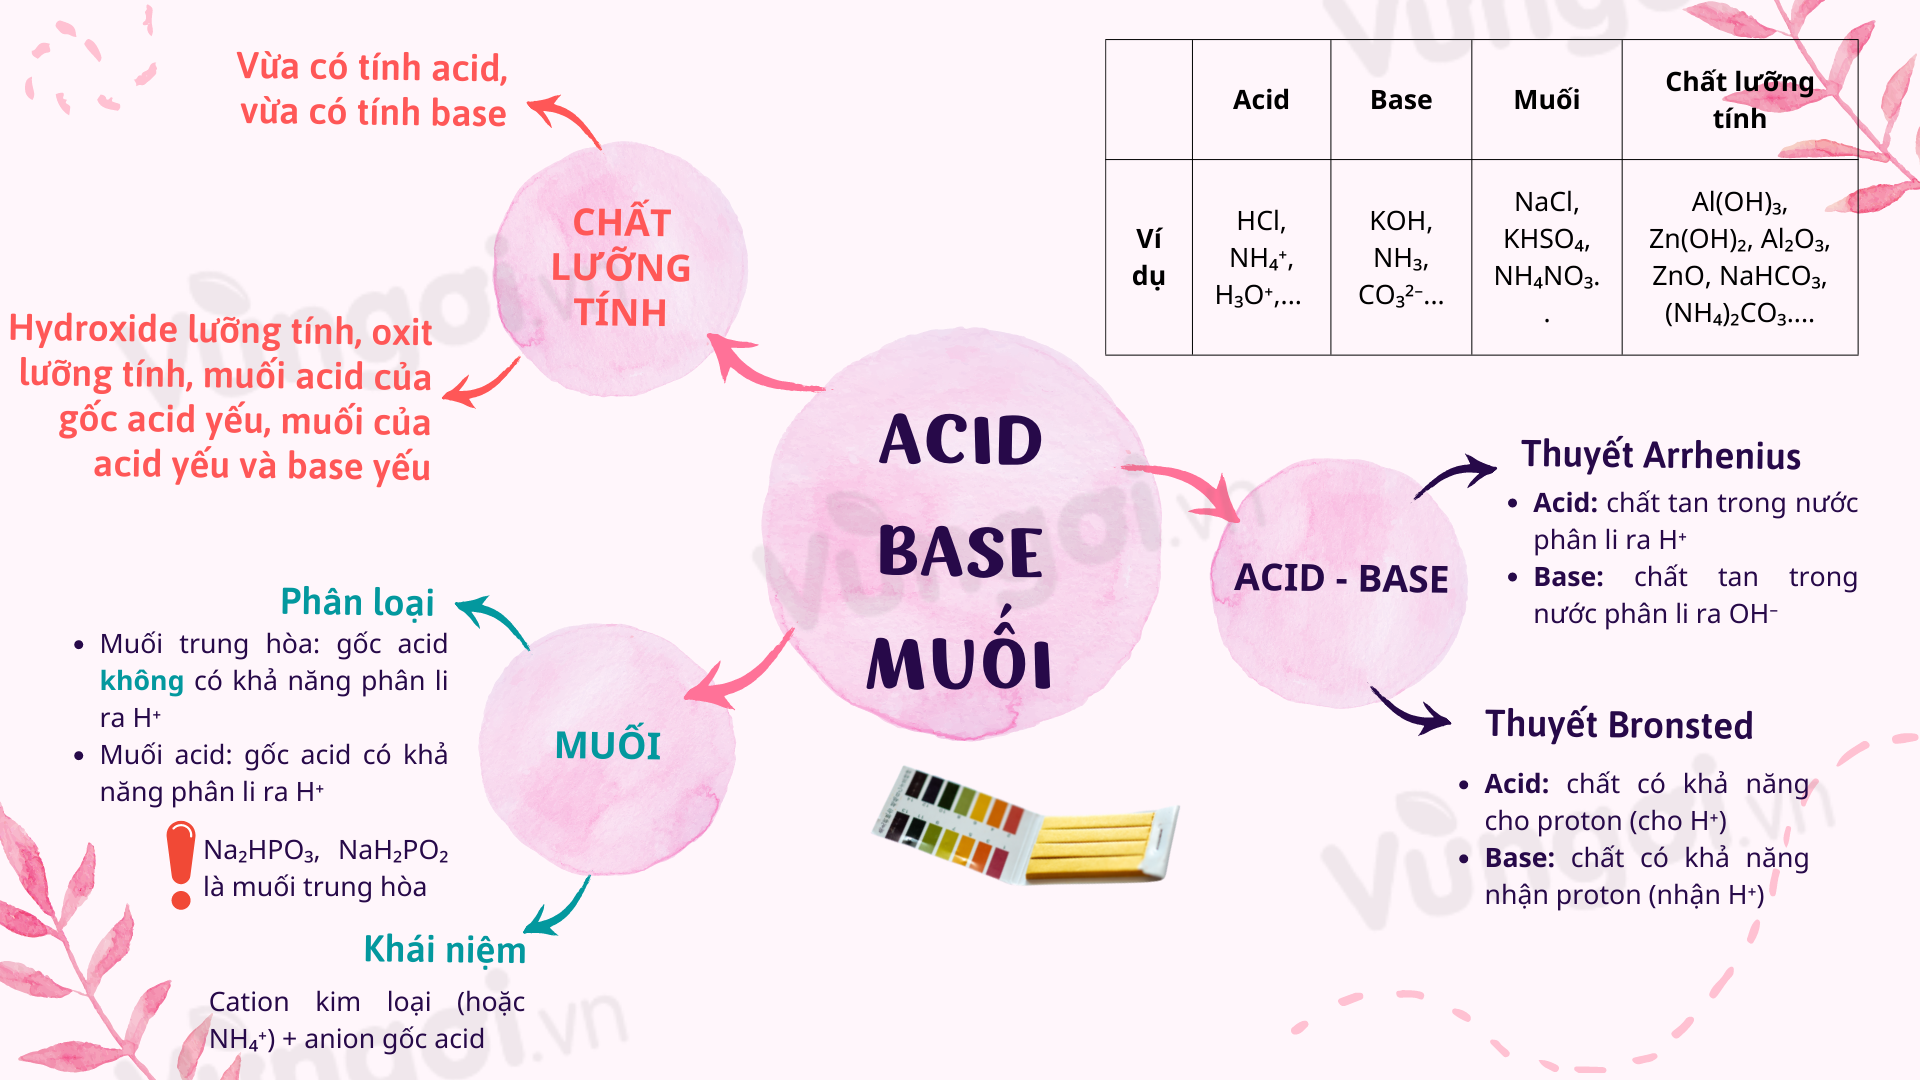 Nếu bạn đam mê hóa học, thì hãy tìm hiểu về acid-base-muối. Hình ảnh này sẽ giúp bạn thấy rõ những đặc tính và khả năng tương tác của chúng trong các phản ứng hóa học. Nó chắc chắn sẽ khiến bạn trở nên thích thú và đầy nhiệt huyết.